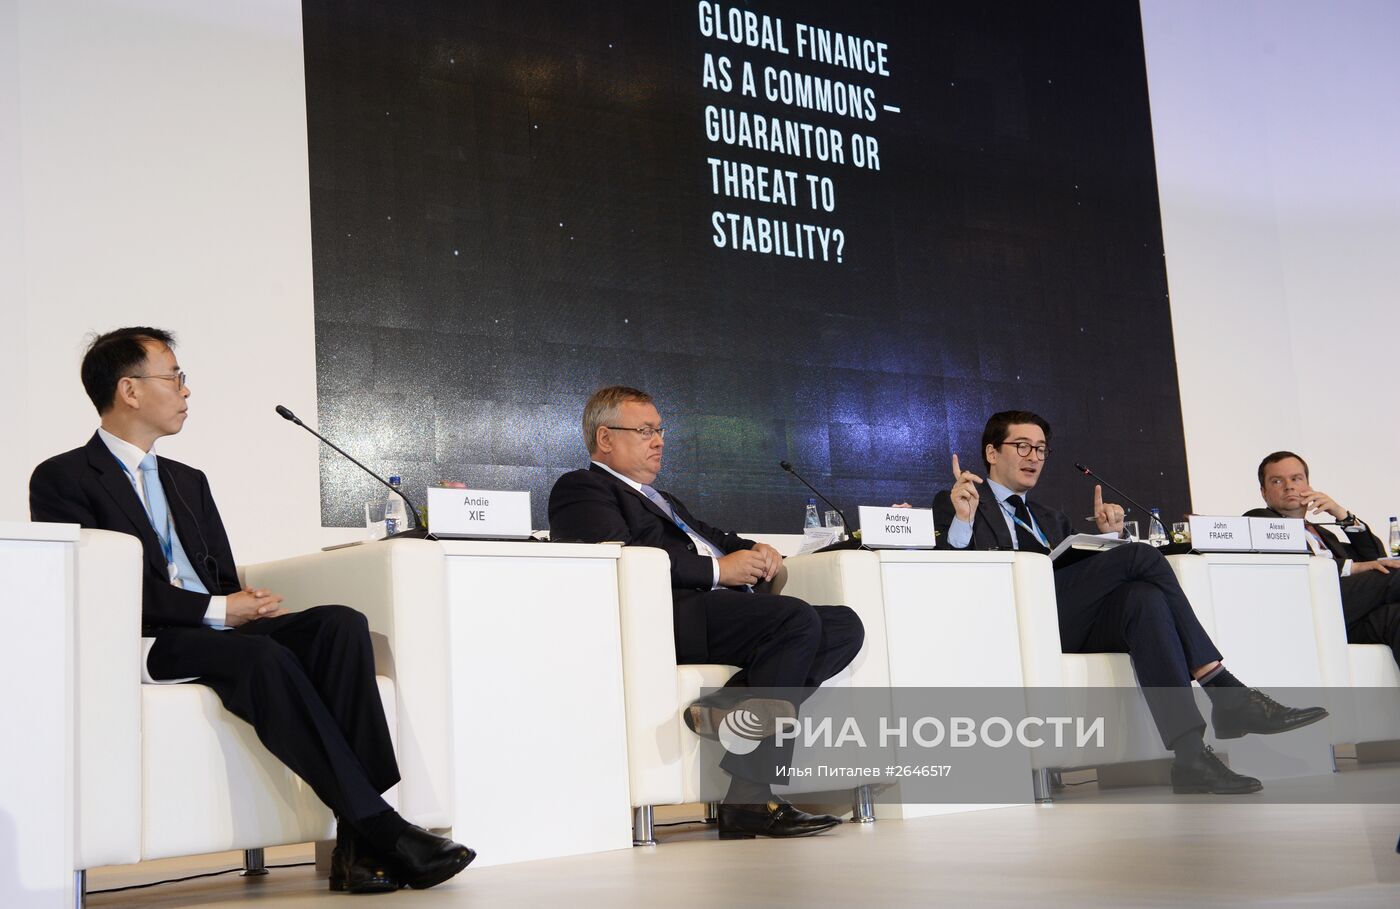 Панельная сессия "Мировая финансовая система — гарант или угроза стабильности?" в рамках ПМЭФ 2015